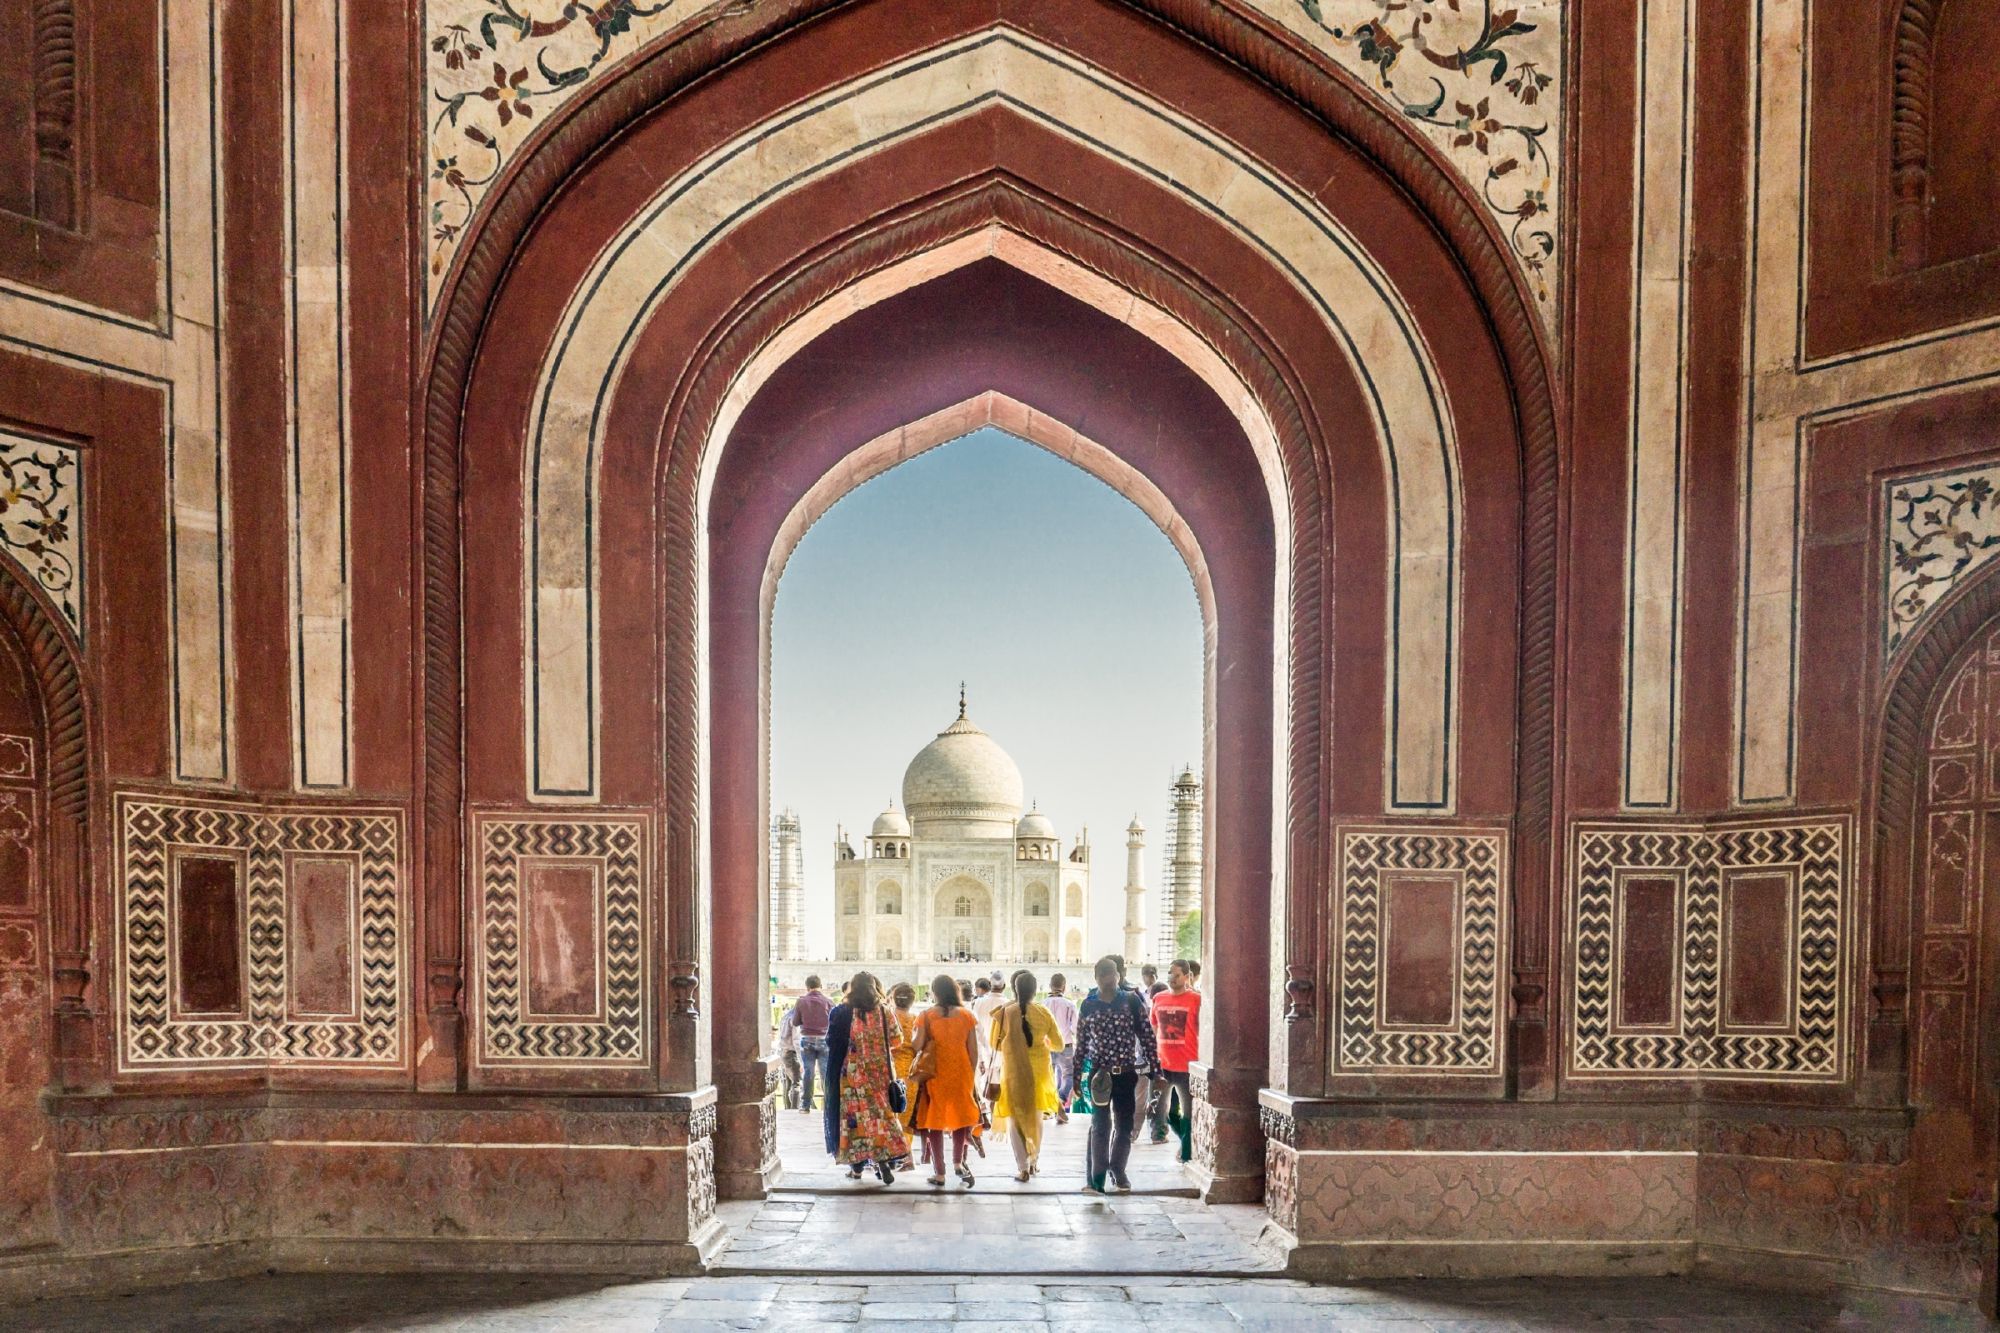 India: mausolei, moschee e mercati. Scopriamo le meraviglie architettoniche dei Moghul